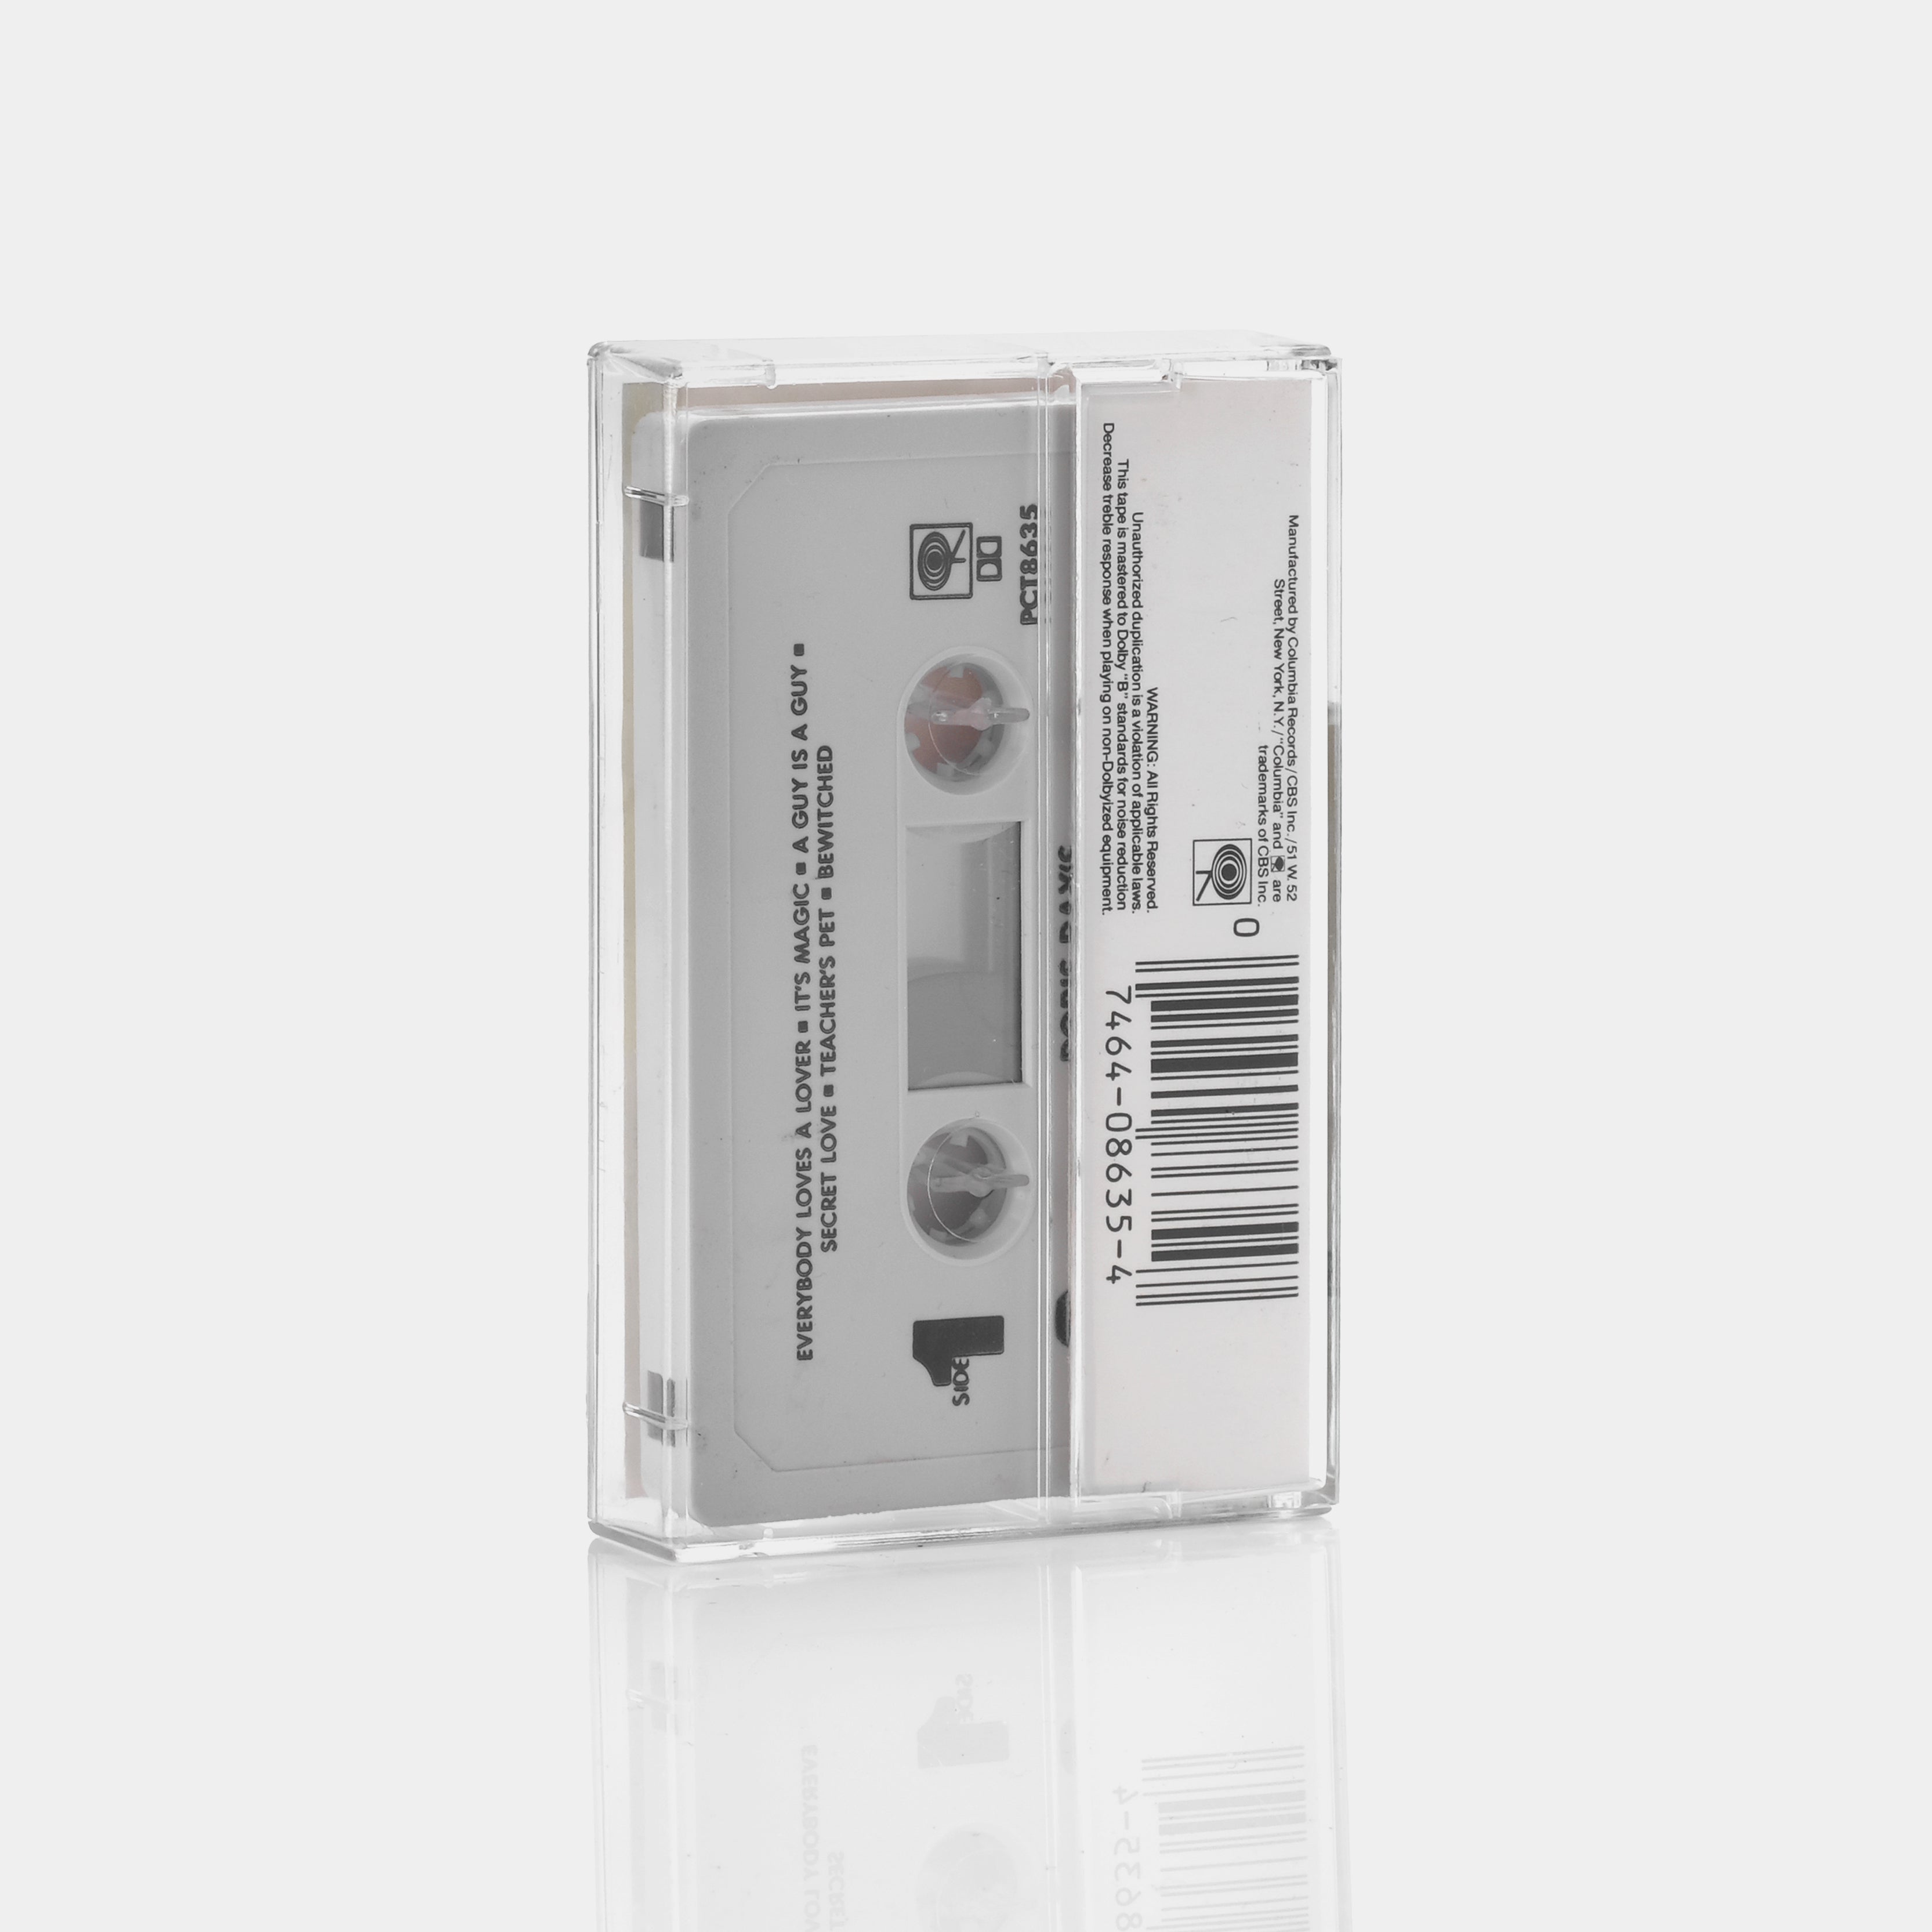 Doris Day's Greatest Hits Cassette Tape